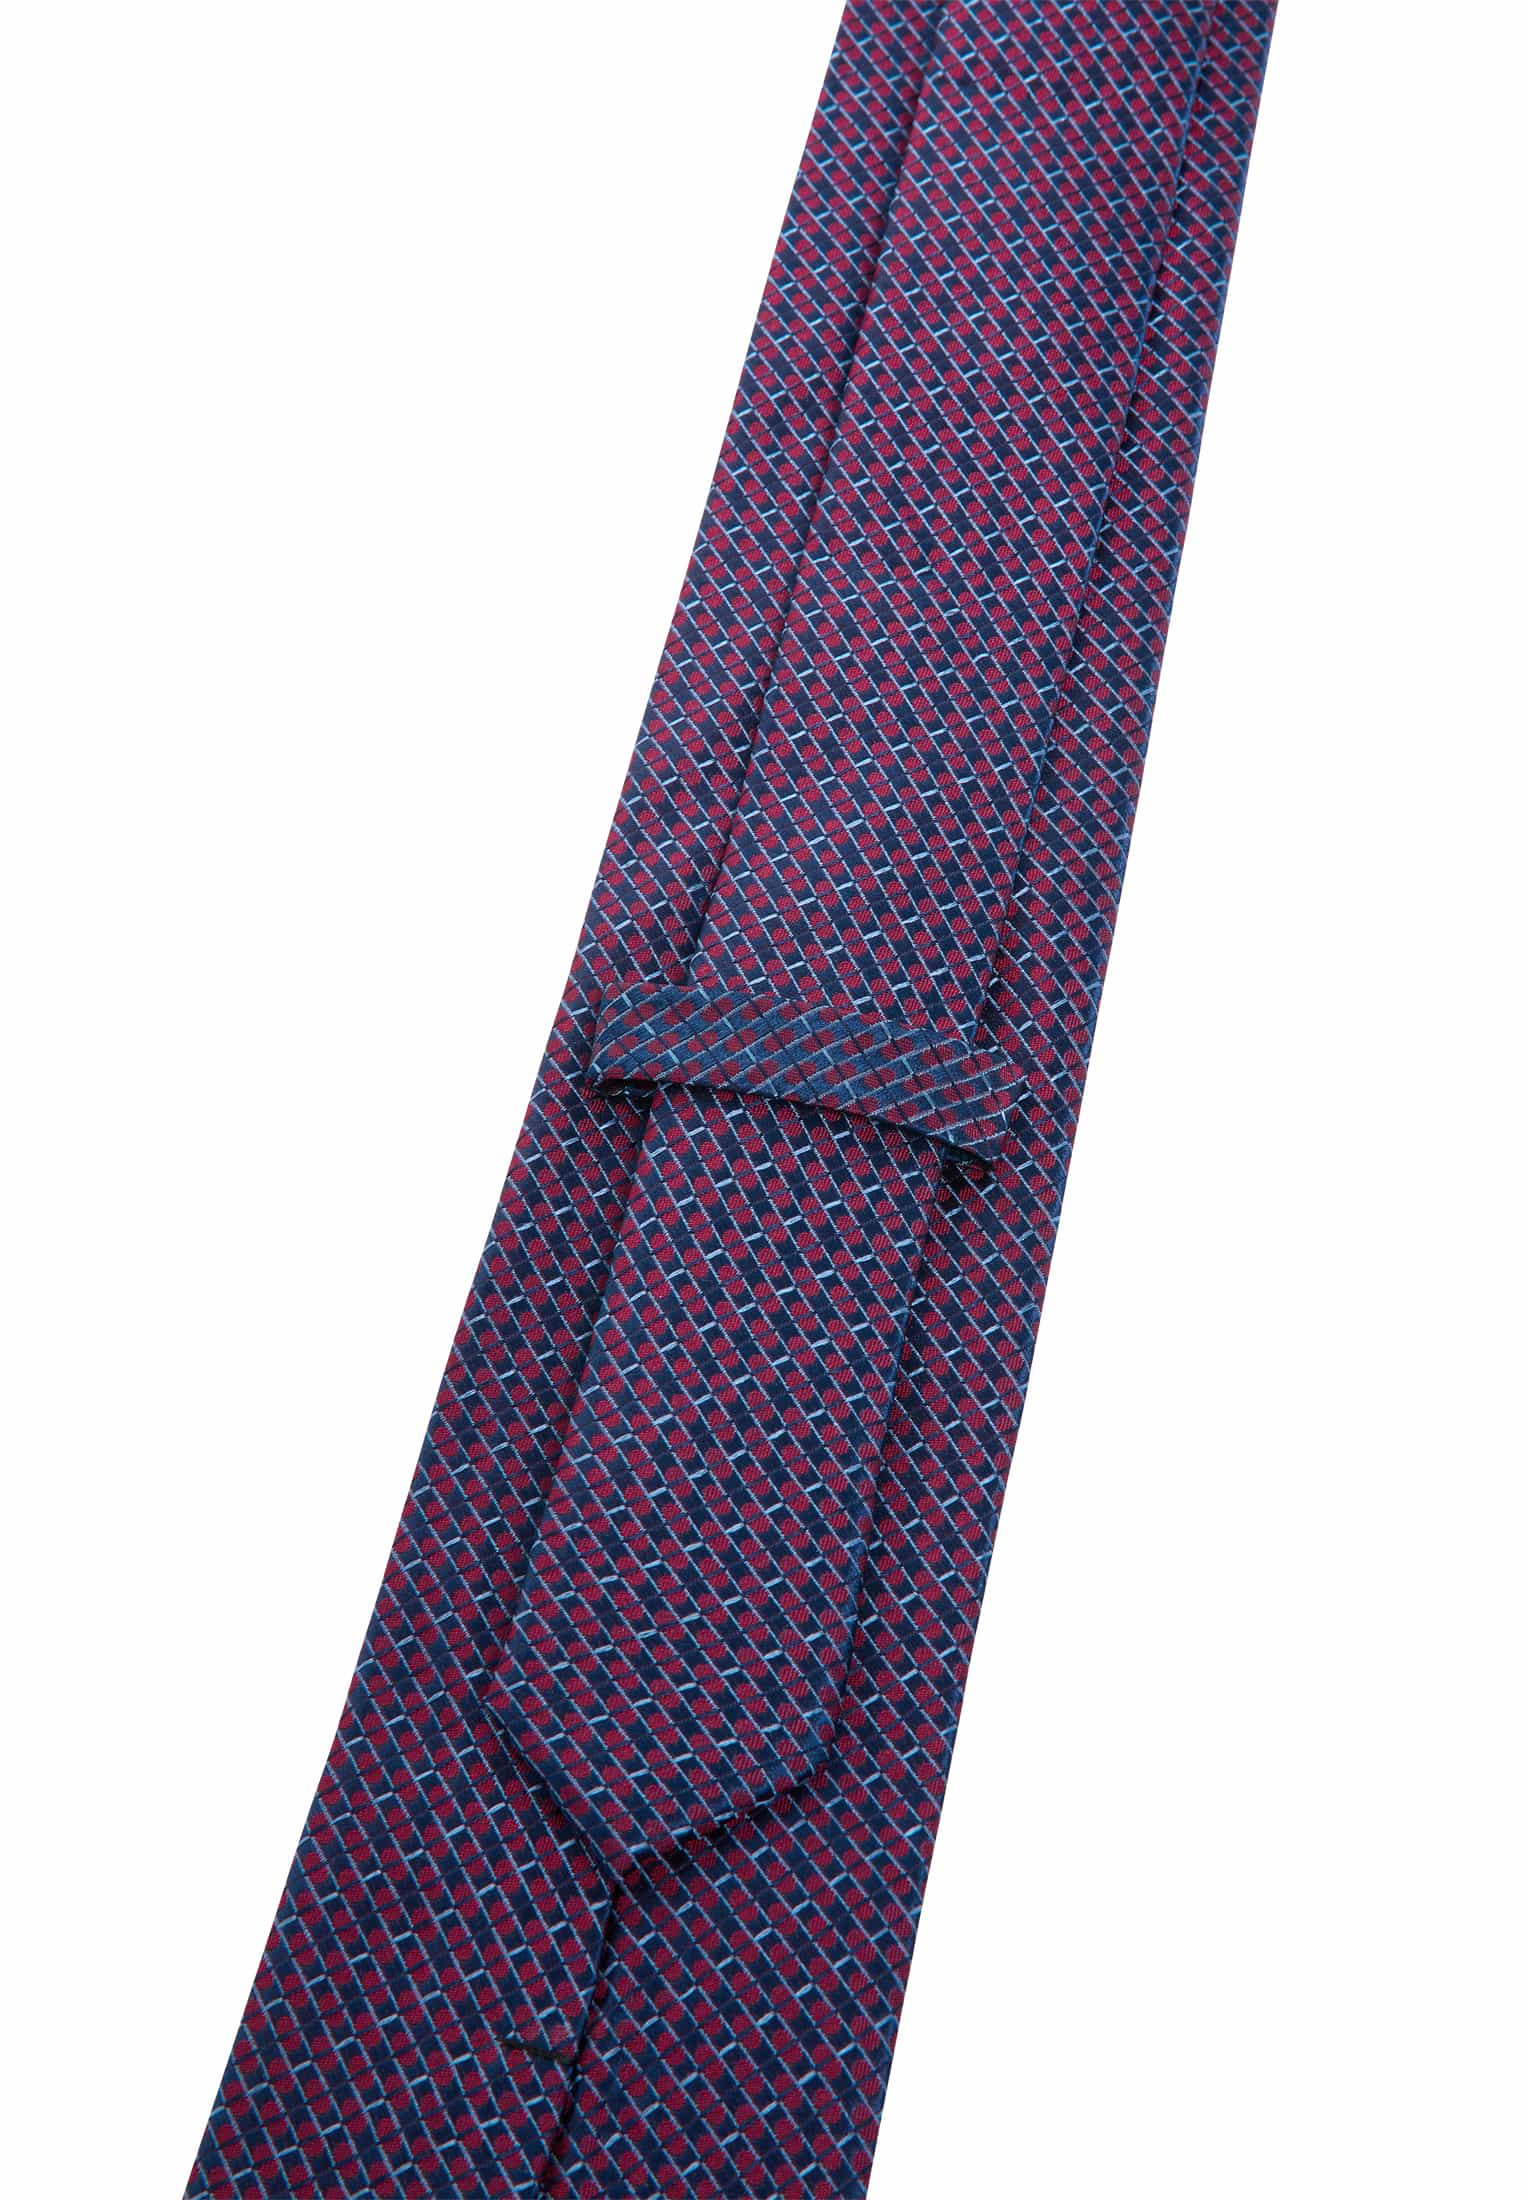 Tie in burgundy structured